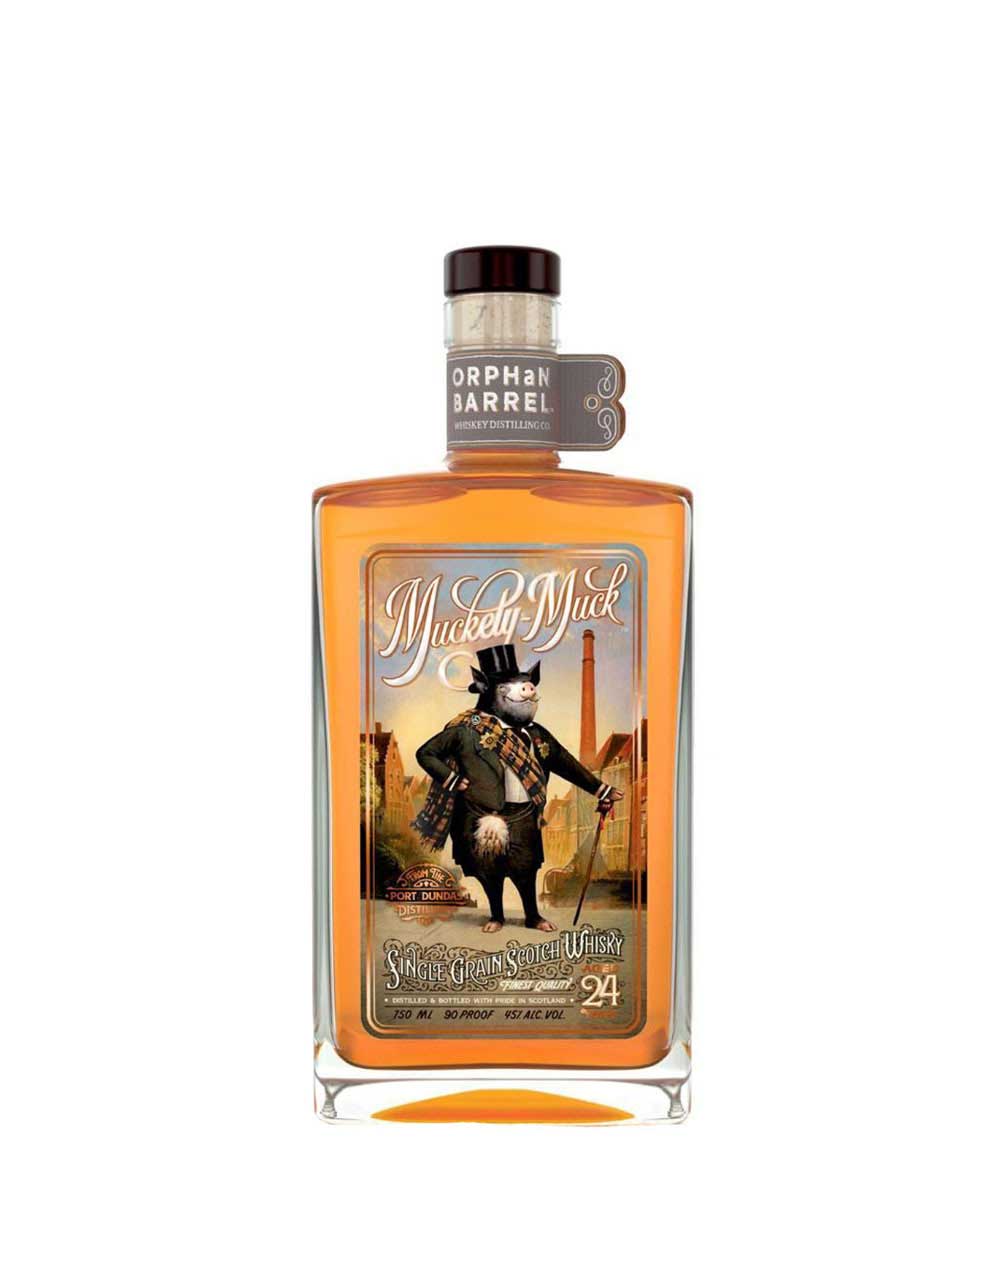 Tullibardine the Murray Chateauneuf du Pape Single Malt Scotch Whisky